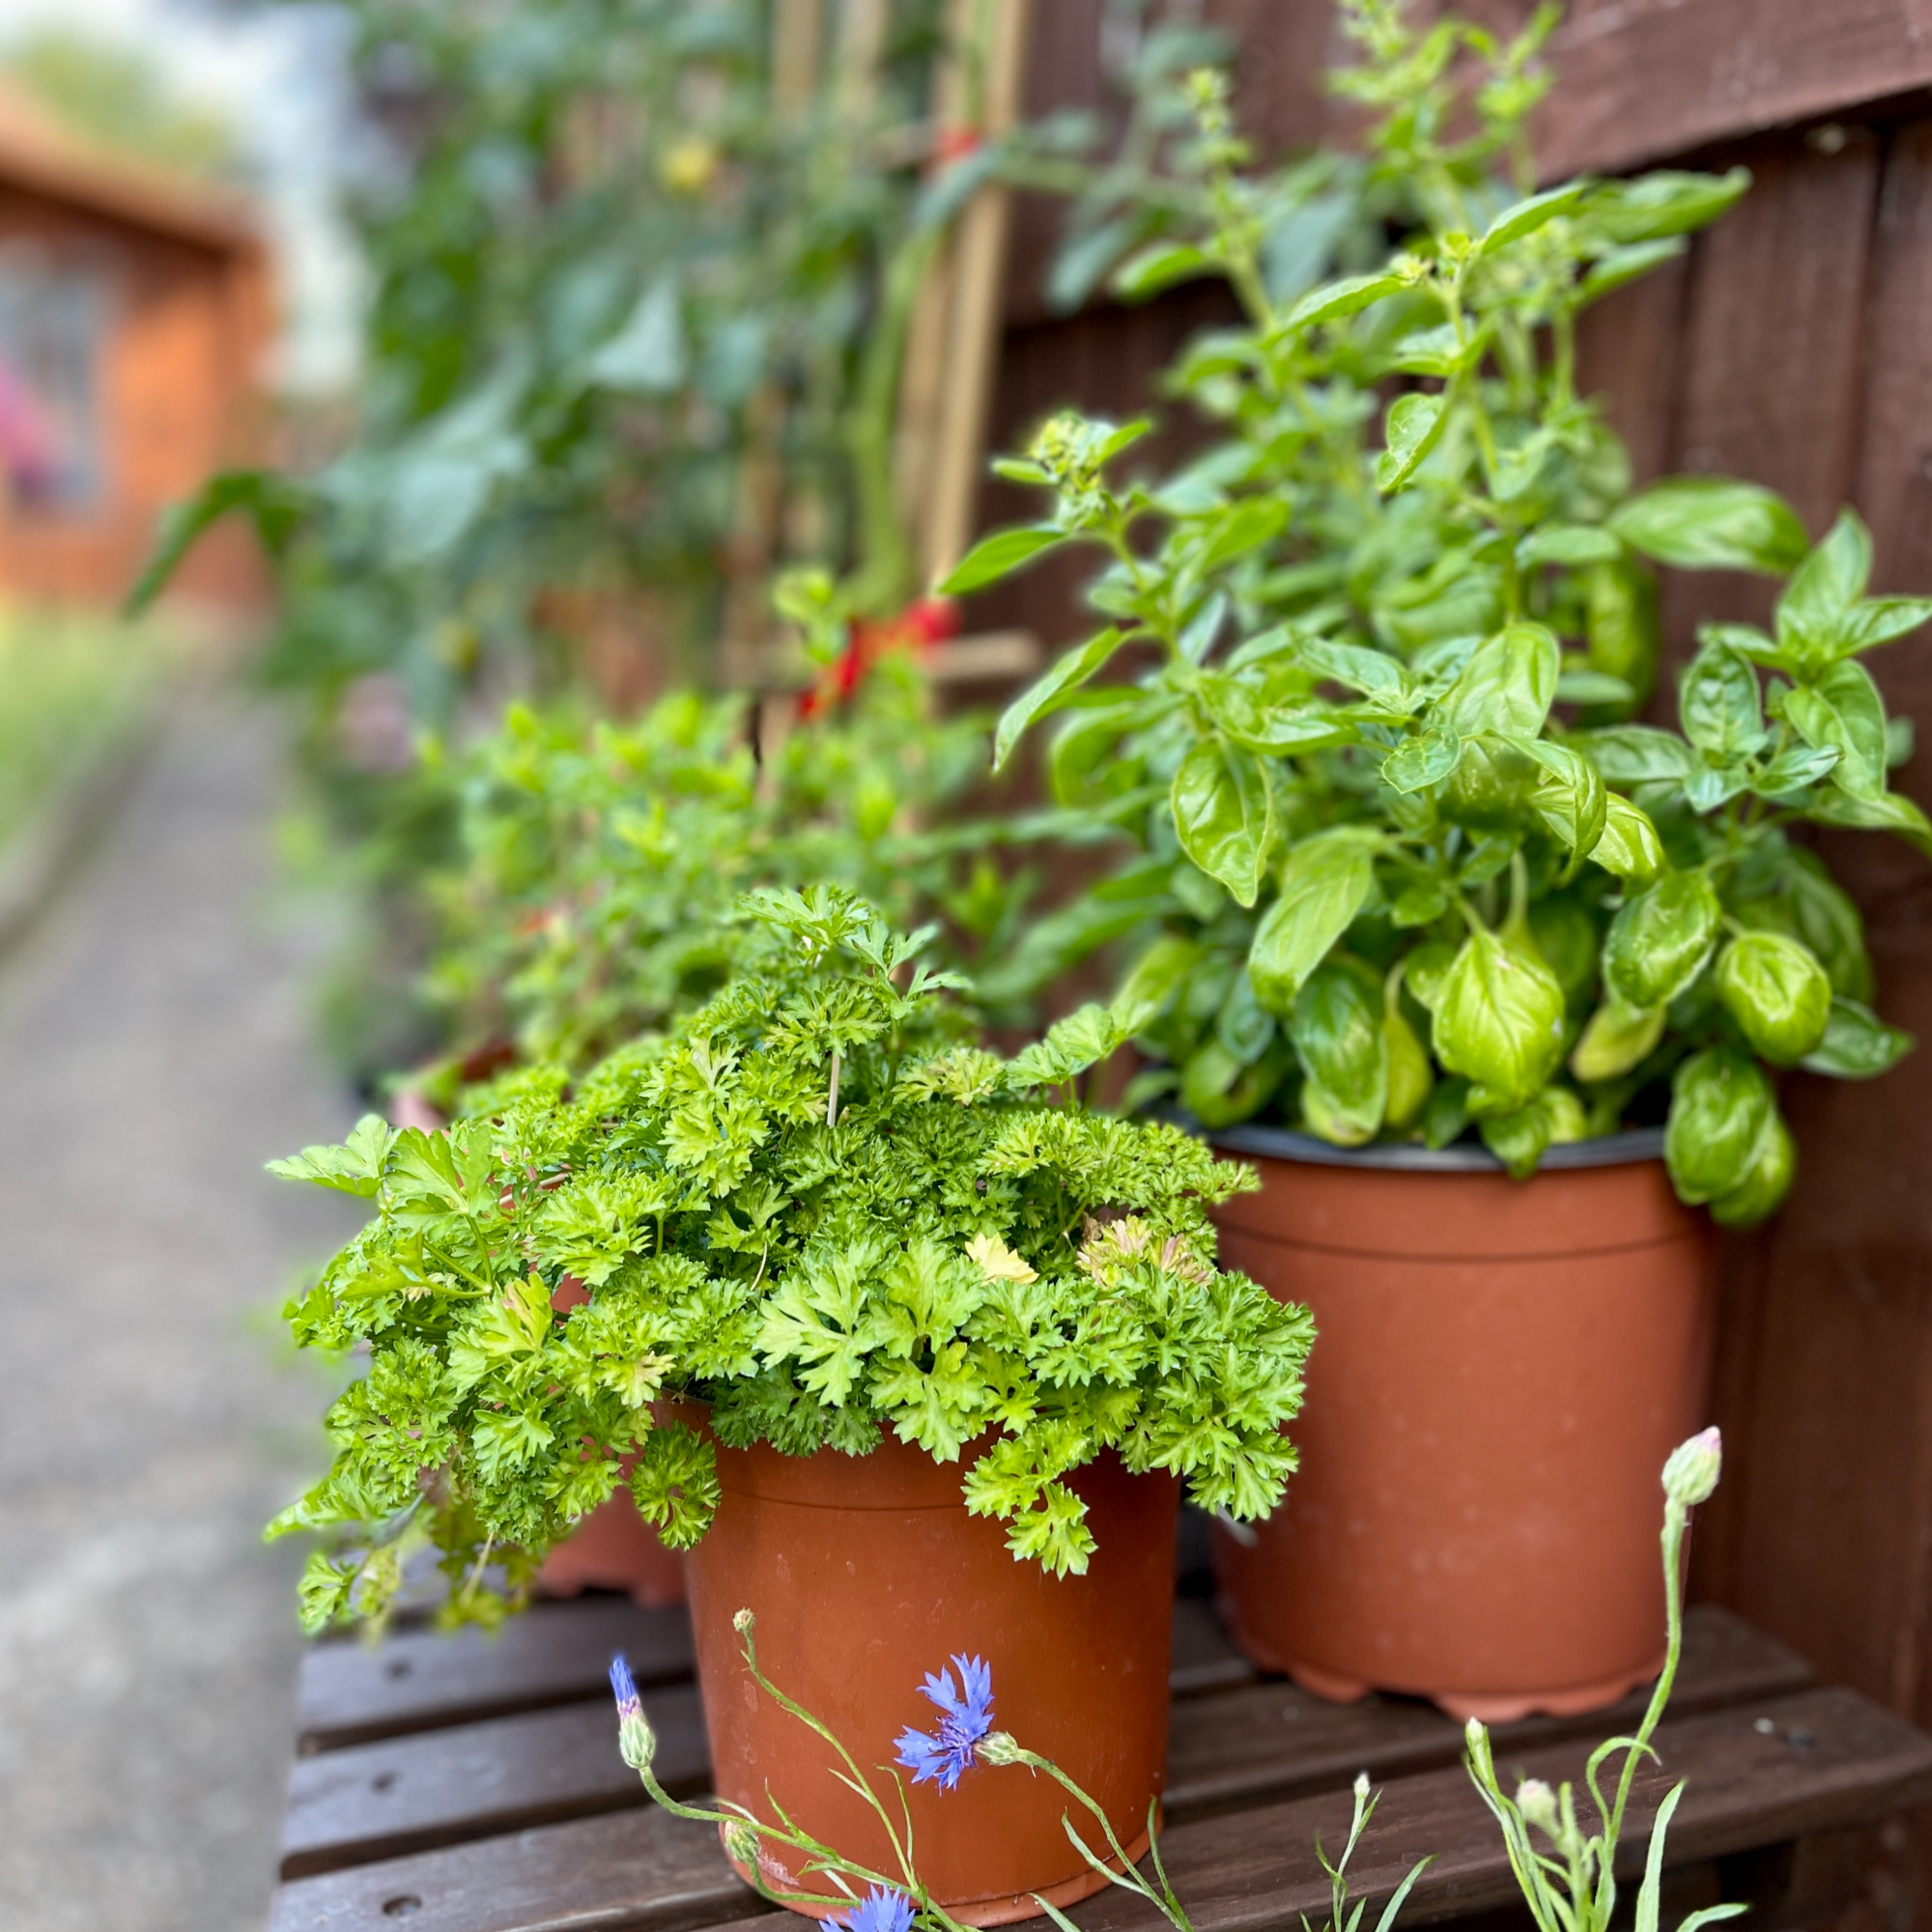 Growing herbs in pots